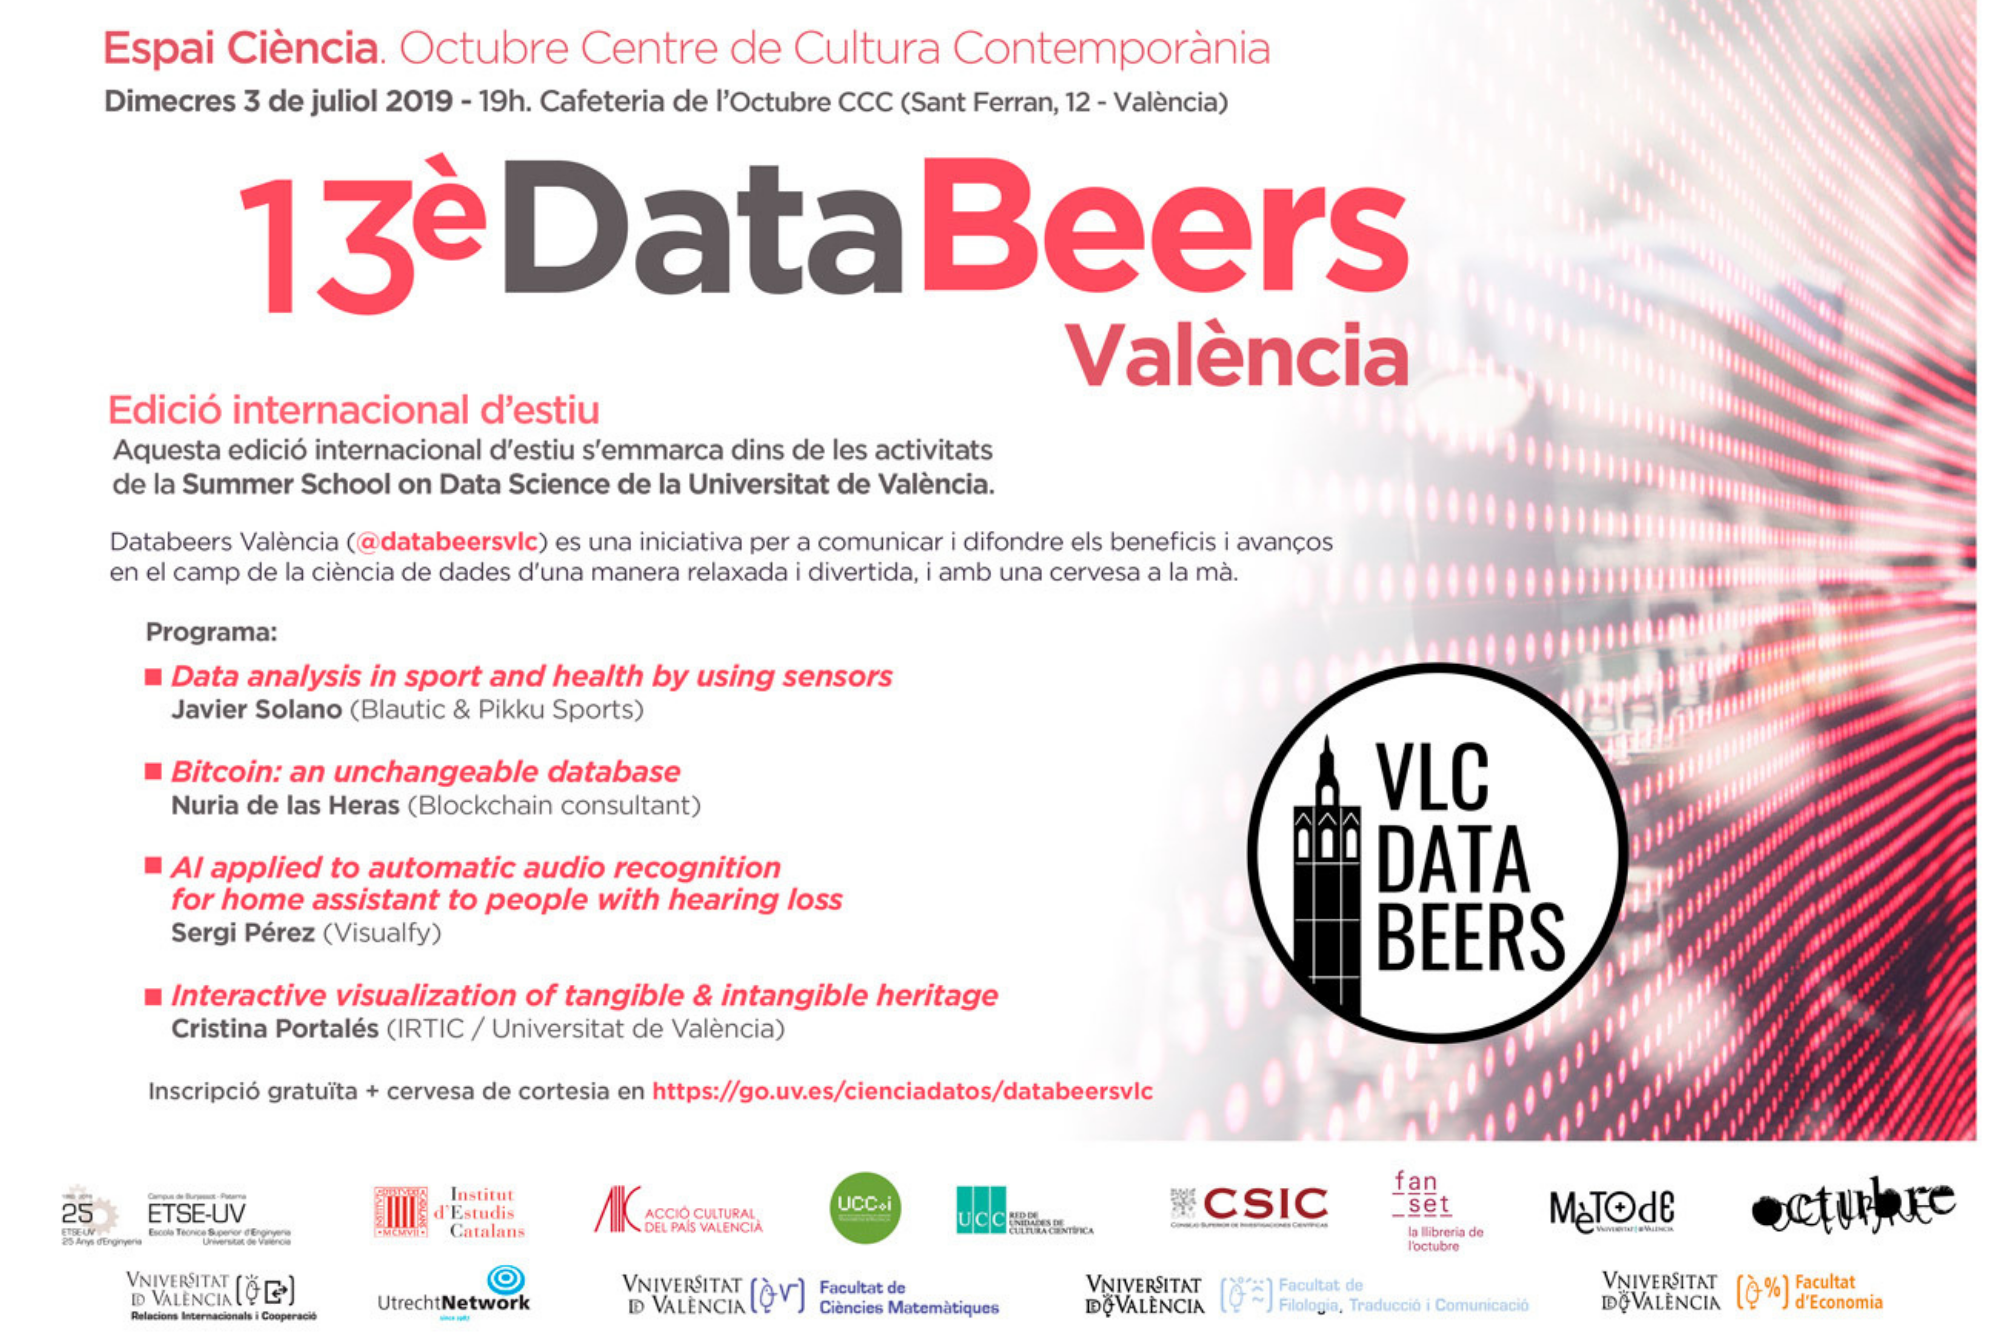 Data Beers València celebra la 13a edición en la II Summer School on Data Science de la UV